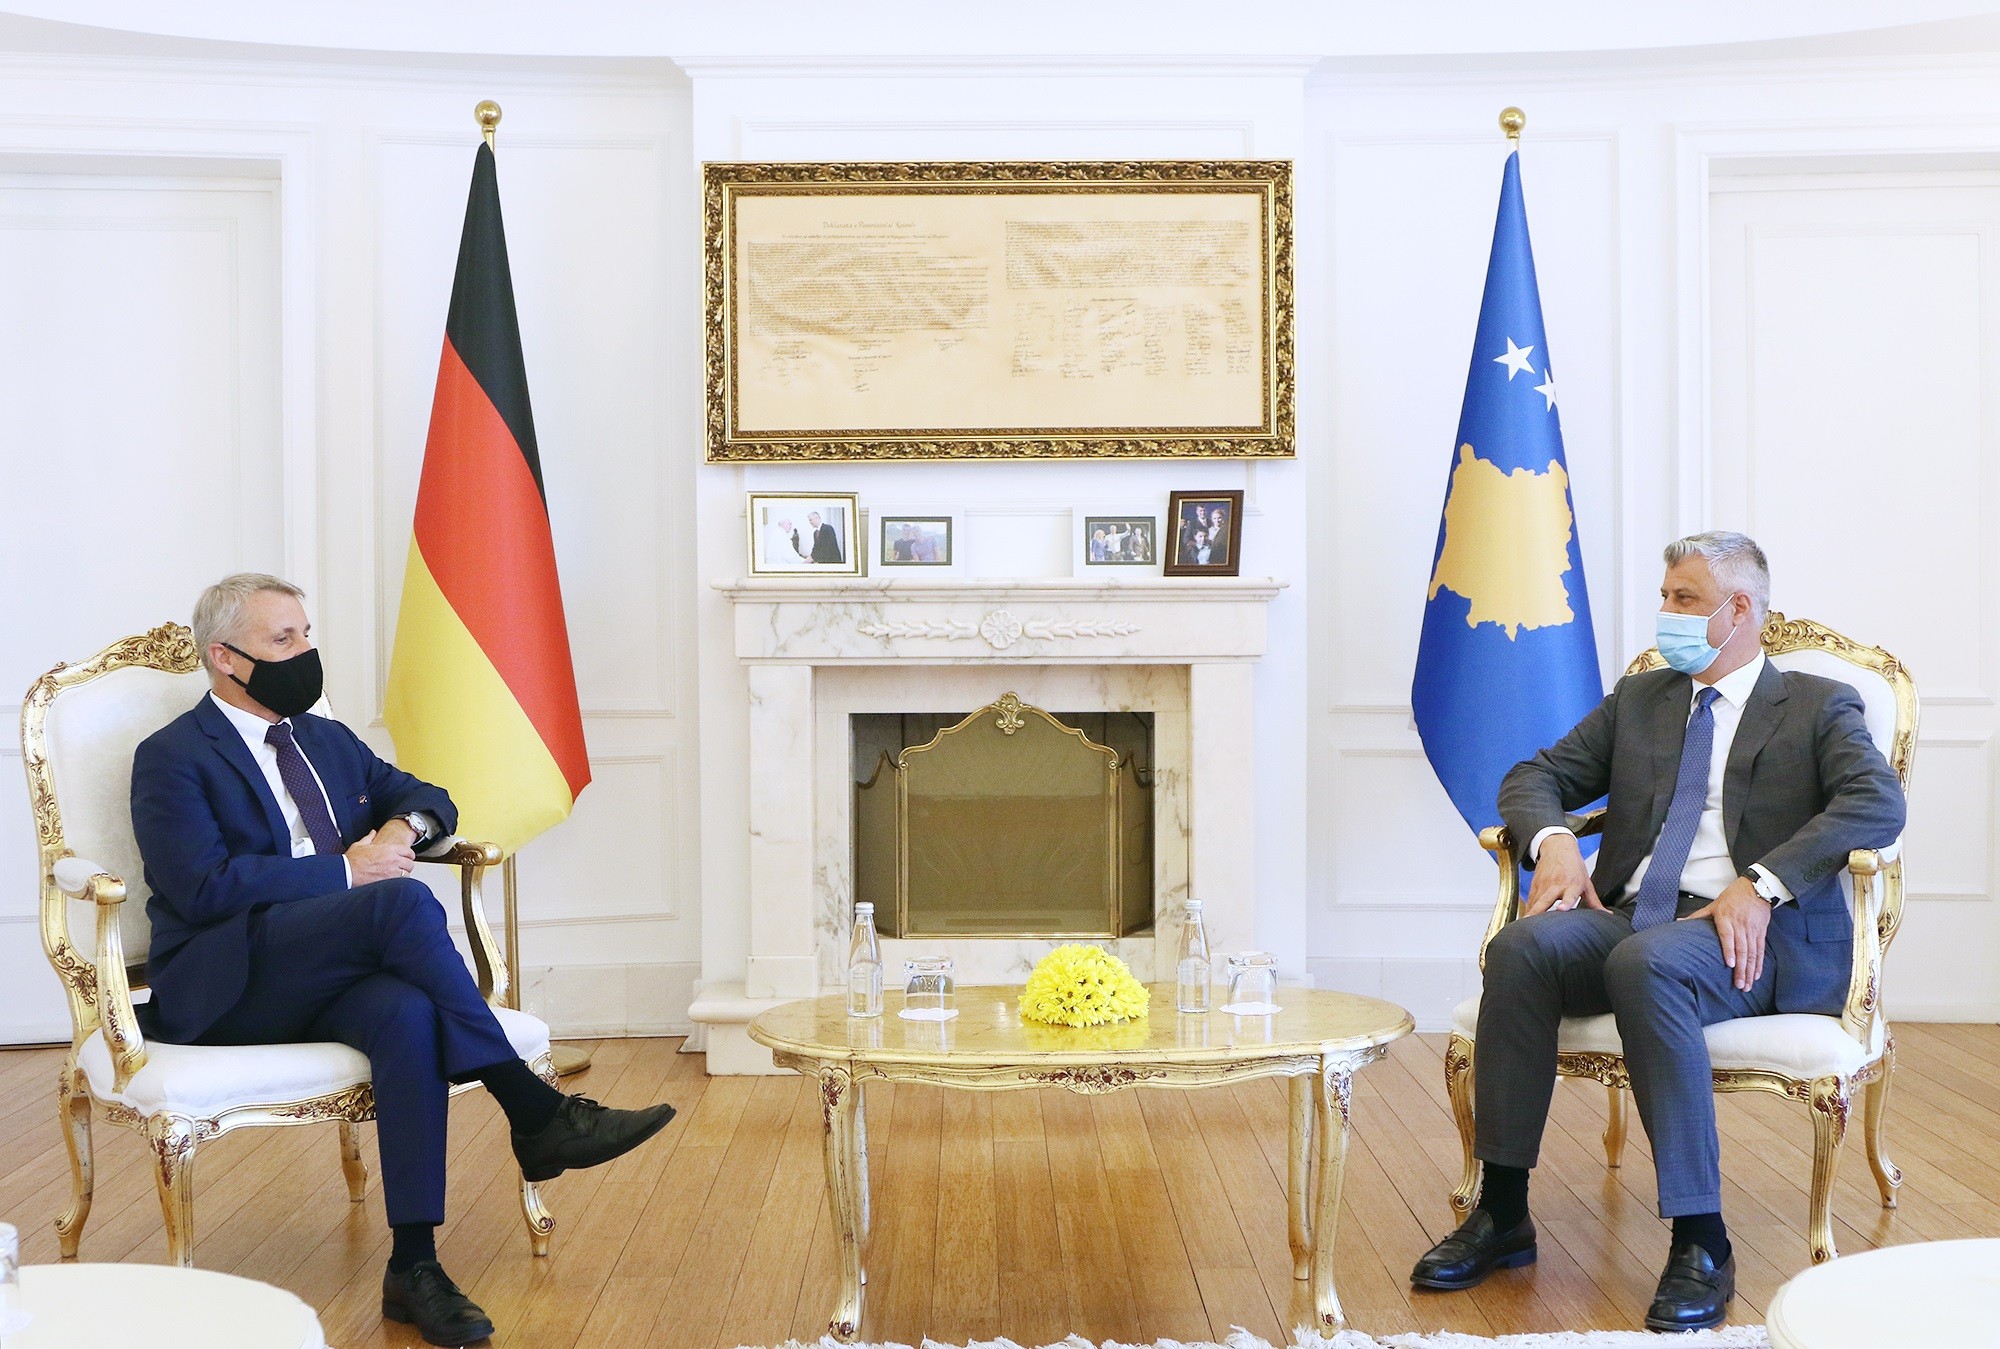 Presidenti Thaçi pranoi letrat kredenciale nga ambasadori i ri i Gjermanisë